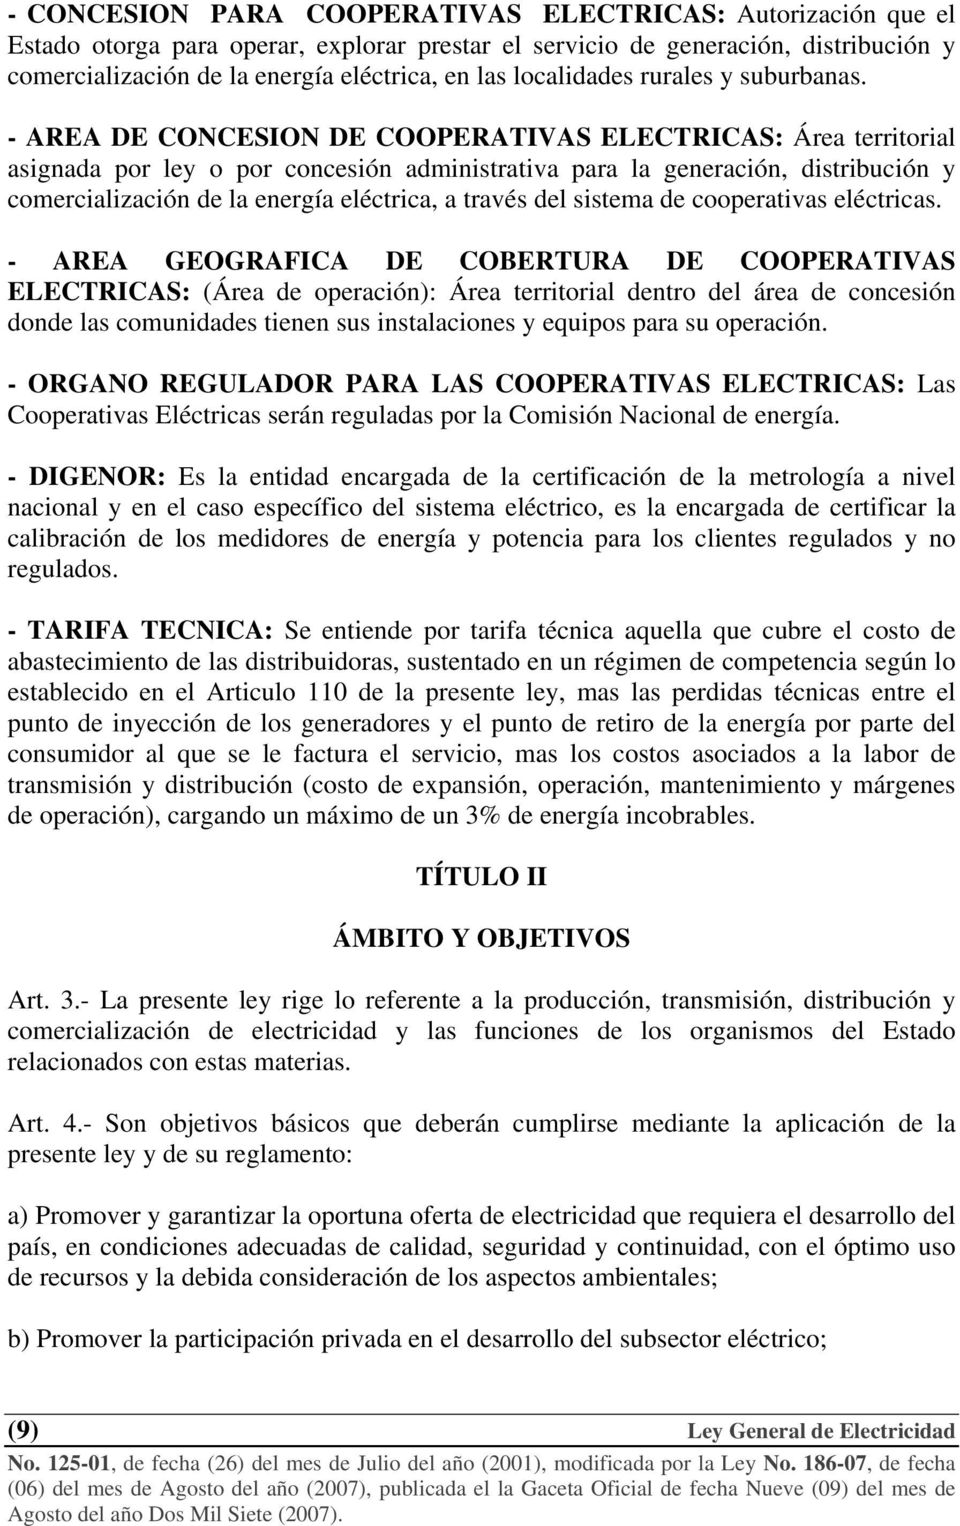 - AREA DE CONCESION DE COOPERATIVAS ELECTRICAS: Área territorial asignada por ley o por concesión administrativa para la generación, distribución y comercialización de la energía eléctrica, a través